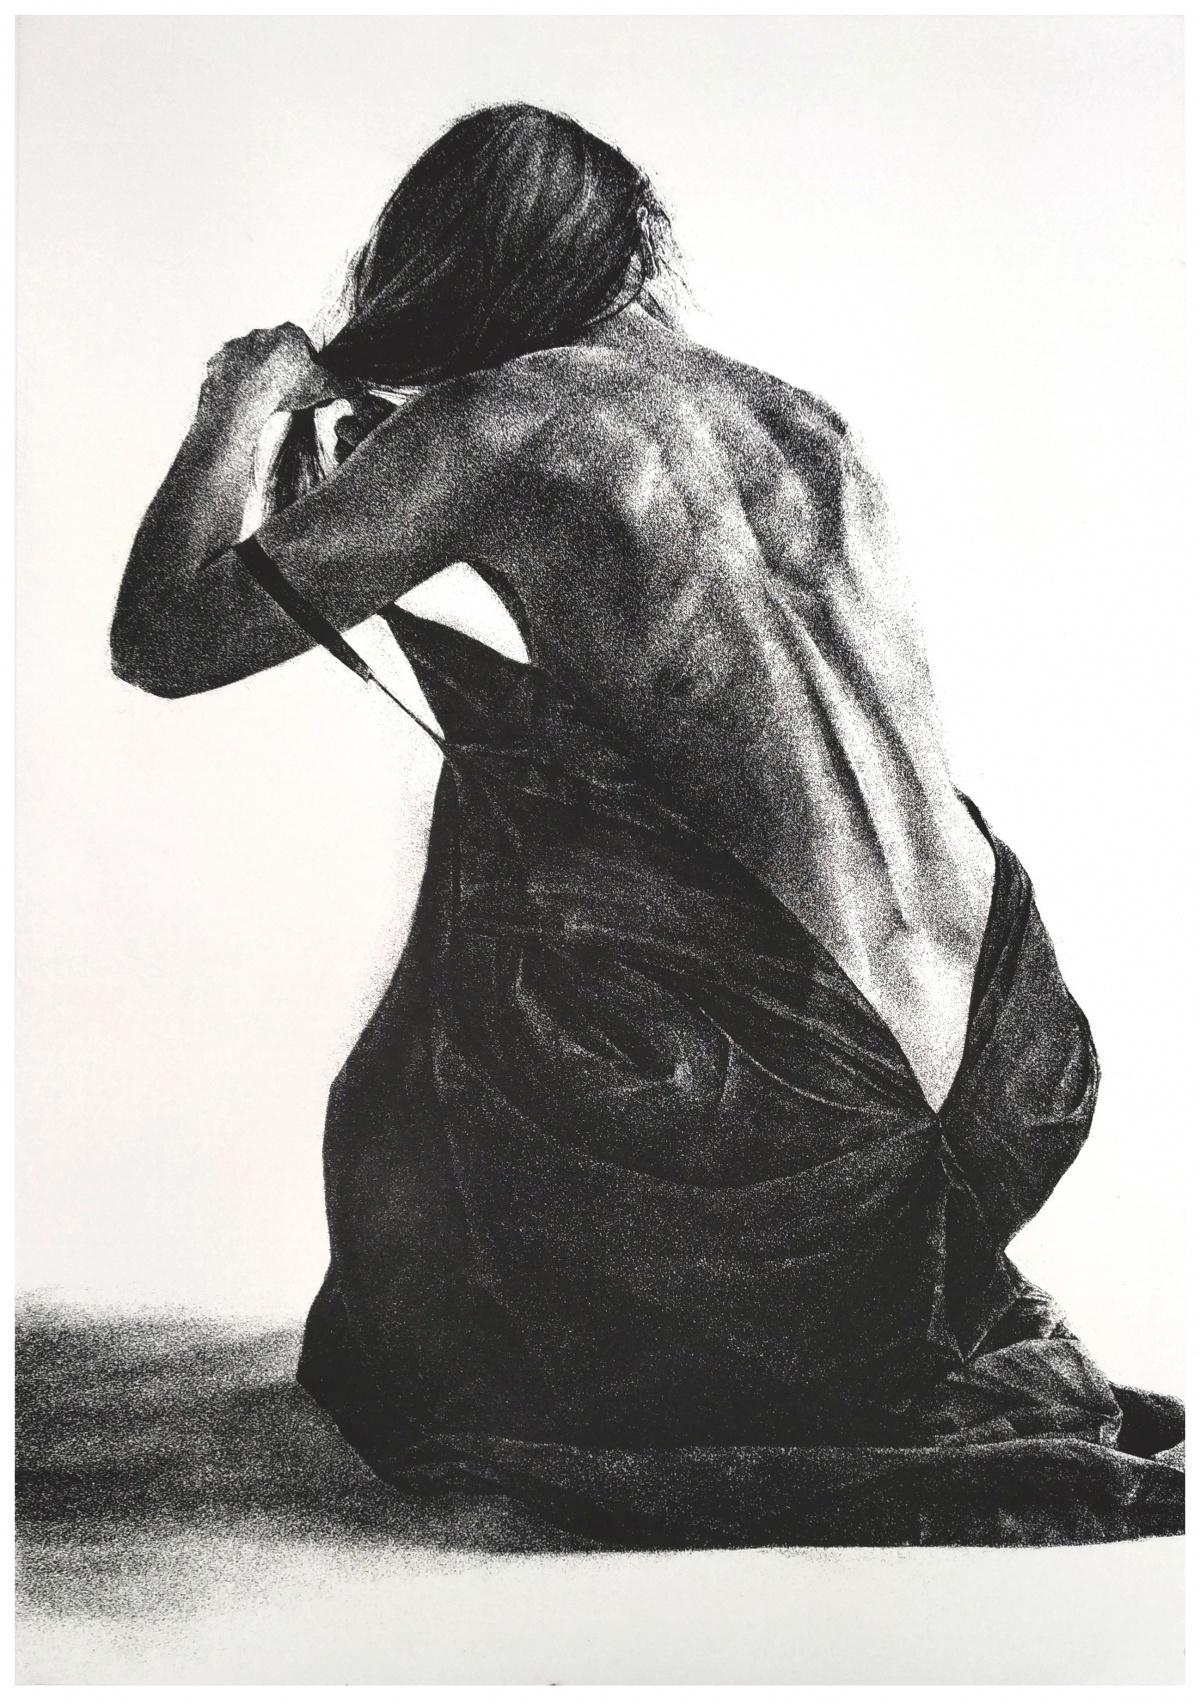 Miroir 2 - Impression figurative contemporaine, noir et blanc, femme